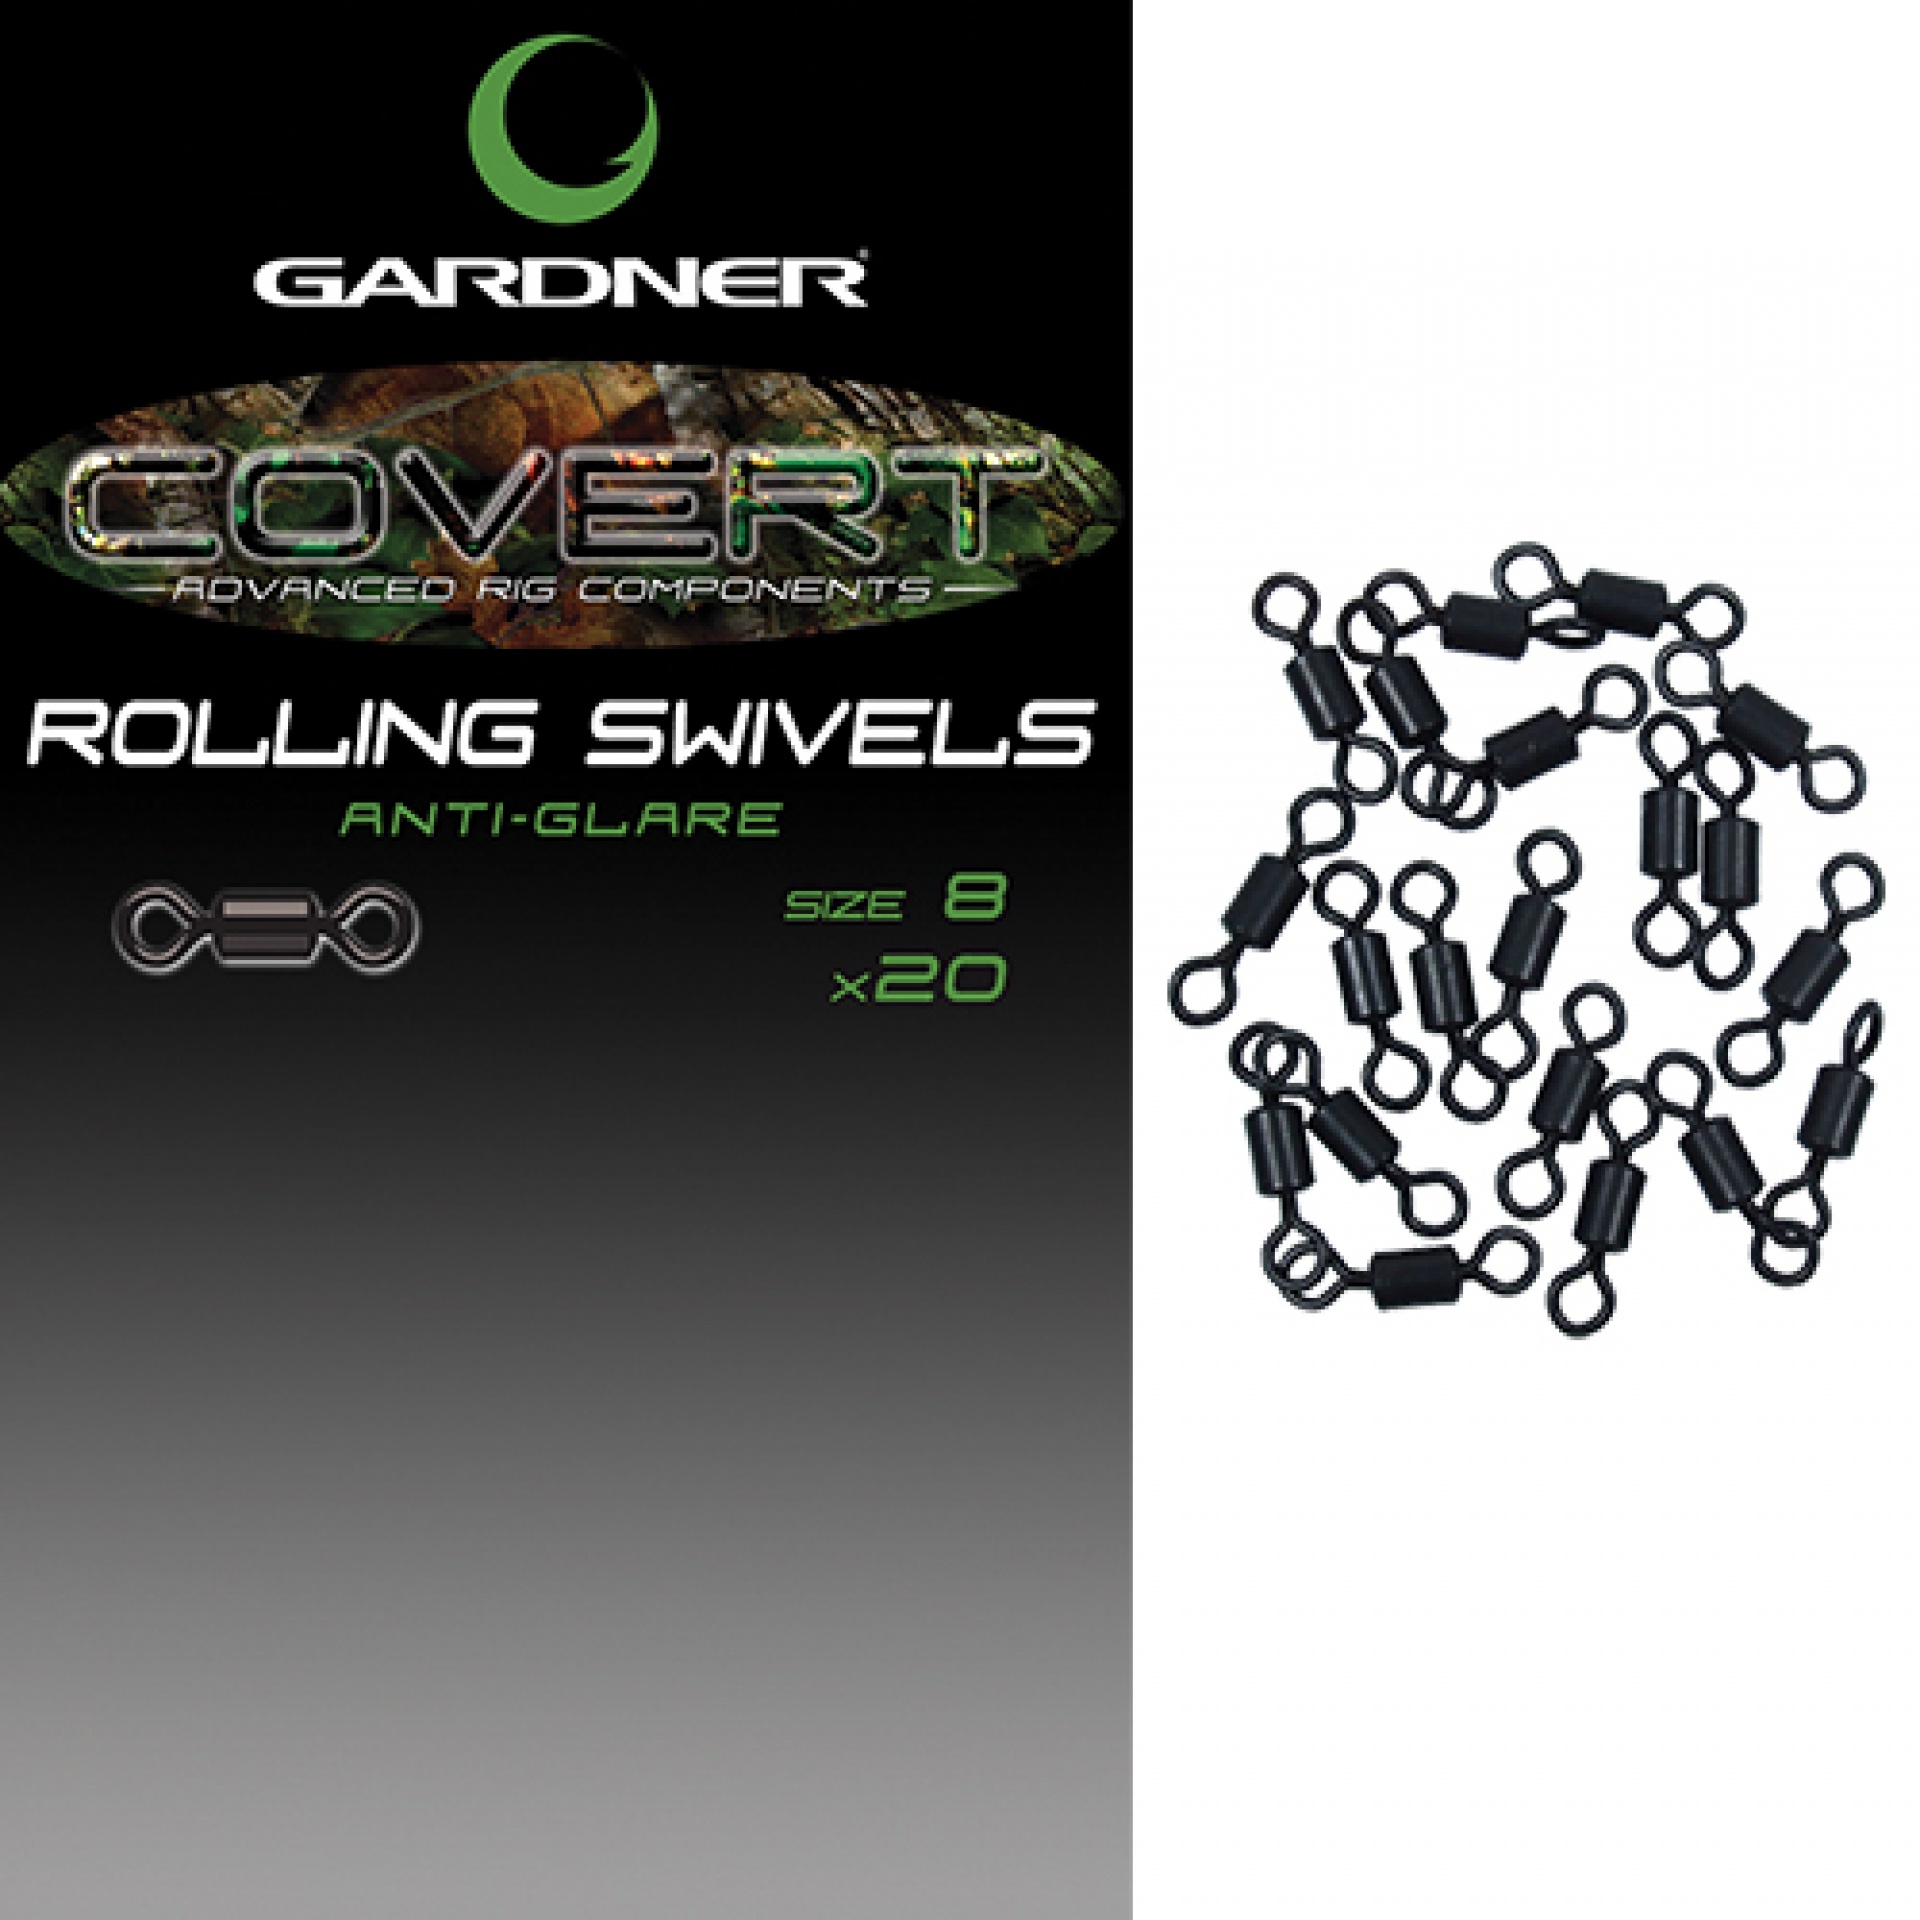 Gardner Covert Rolling Swivels 8